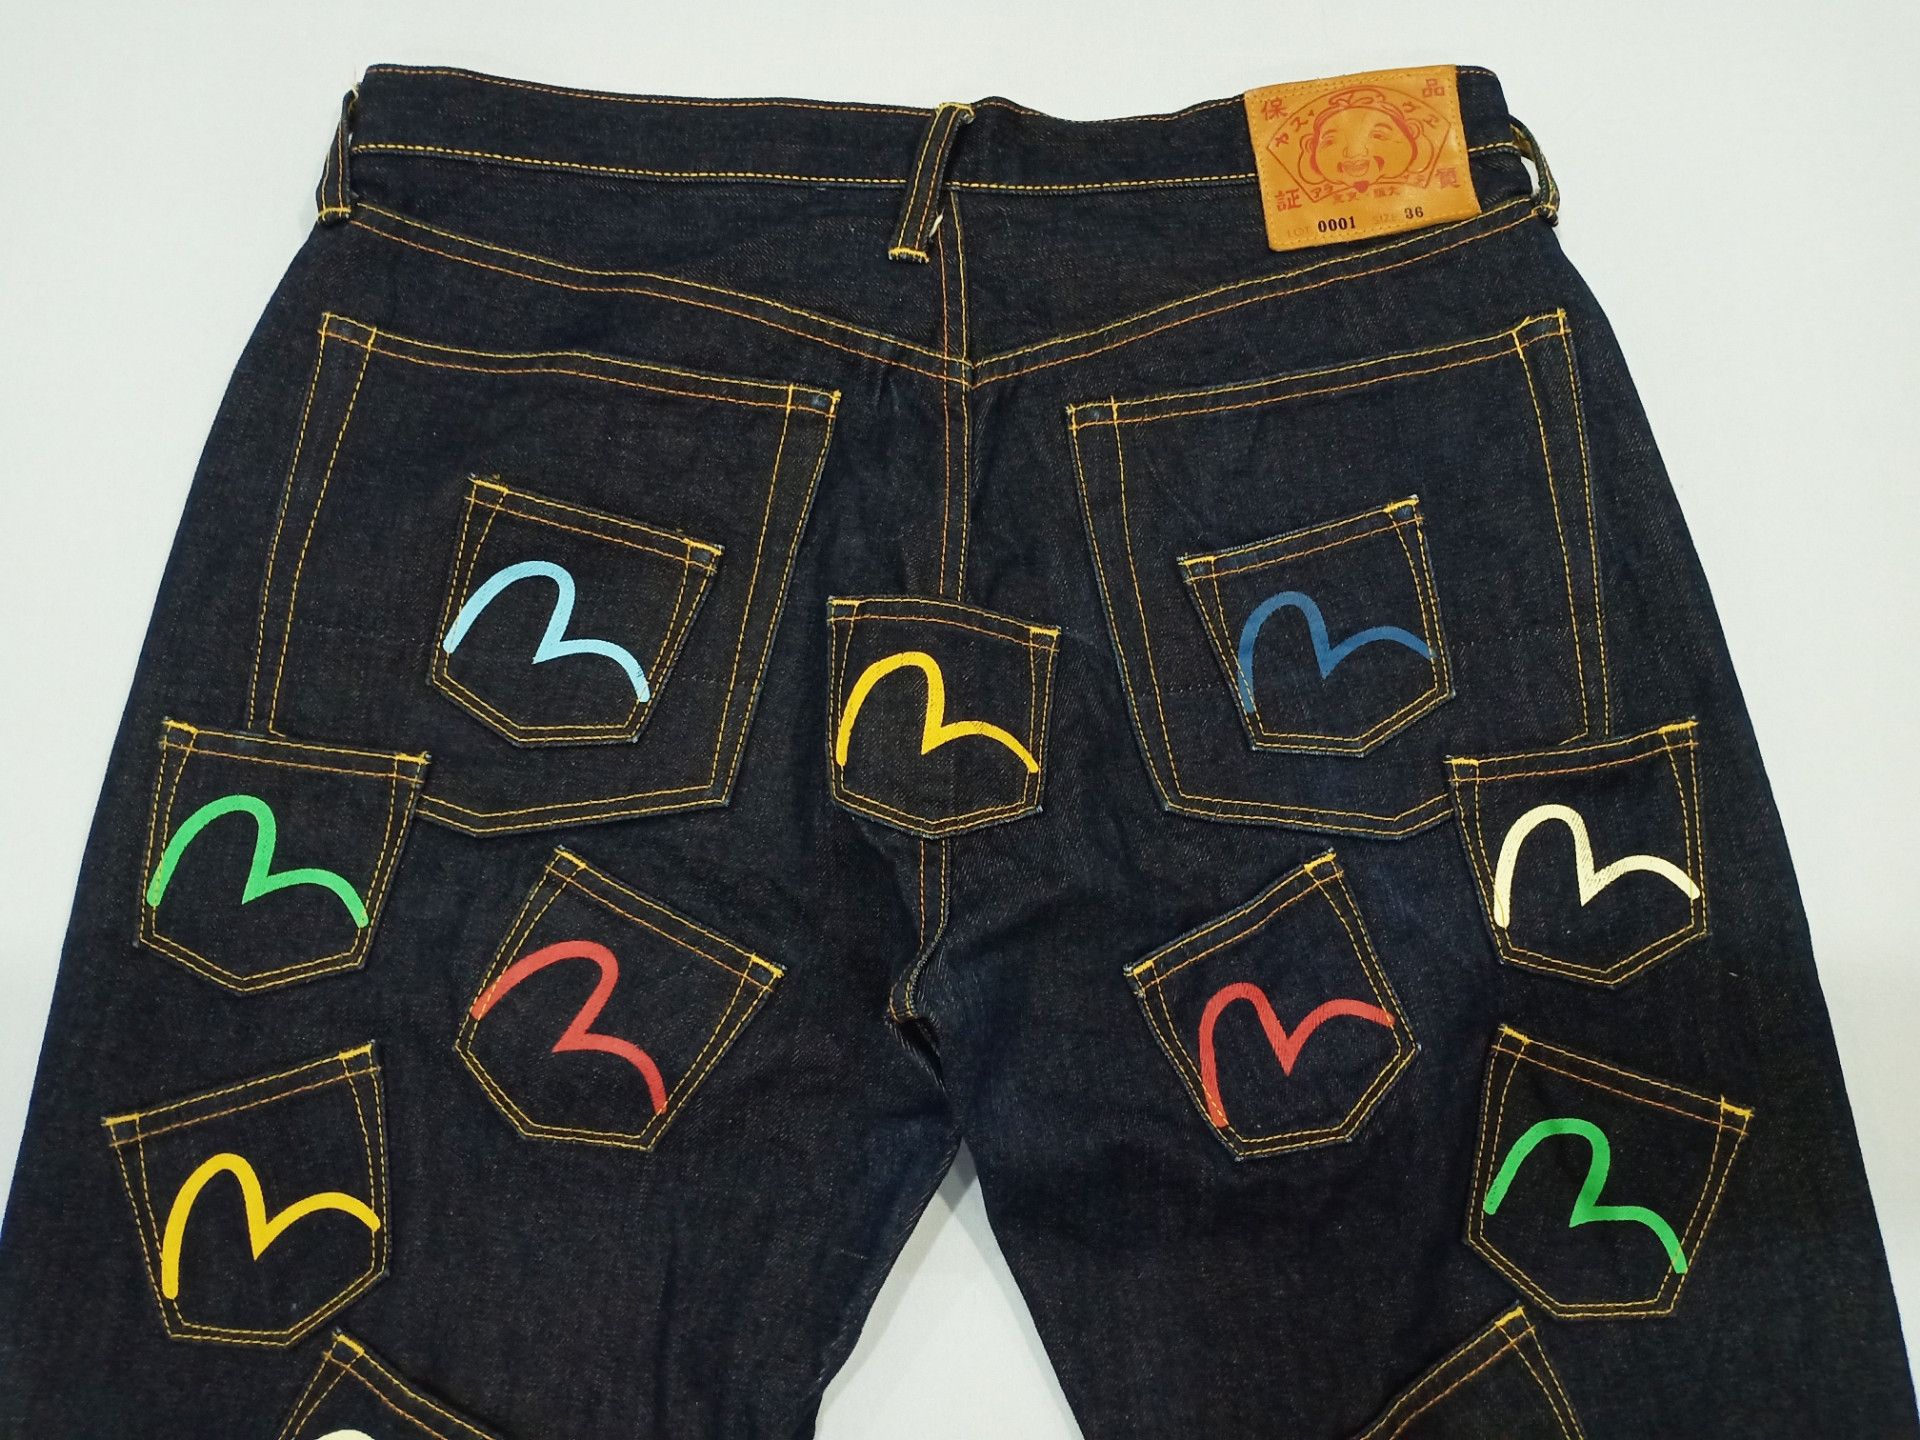 Evisu Evisu Multi Pocket Diacock Selvedge Jeans Size US 36 / EU 52 - 2 Preview